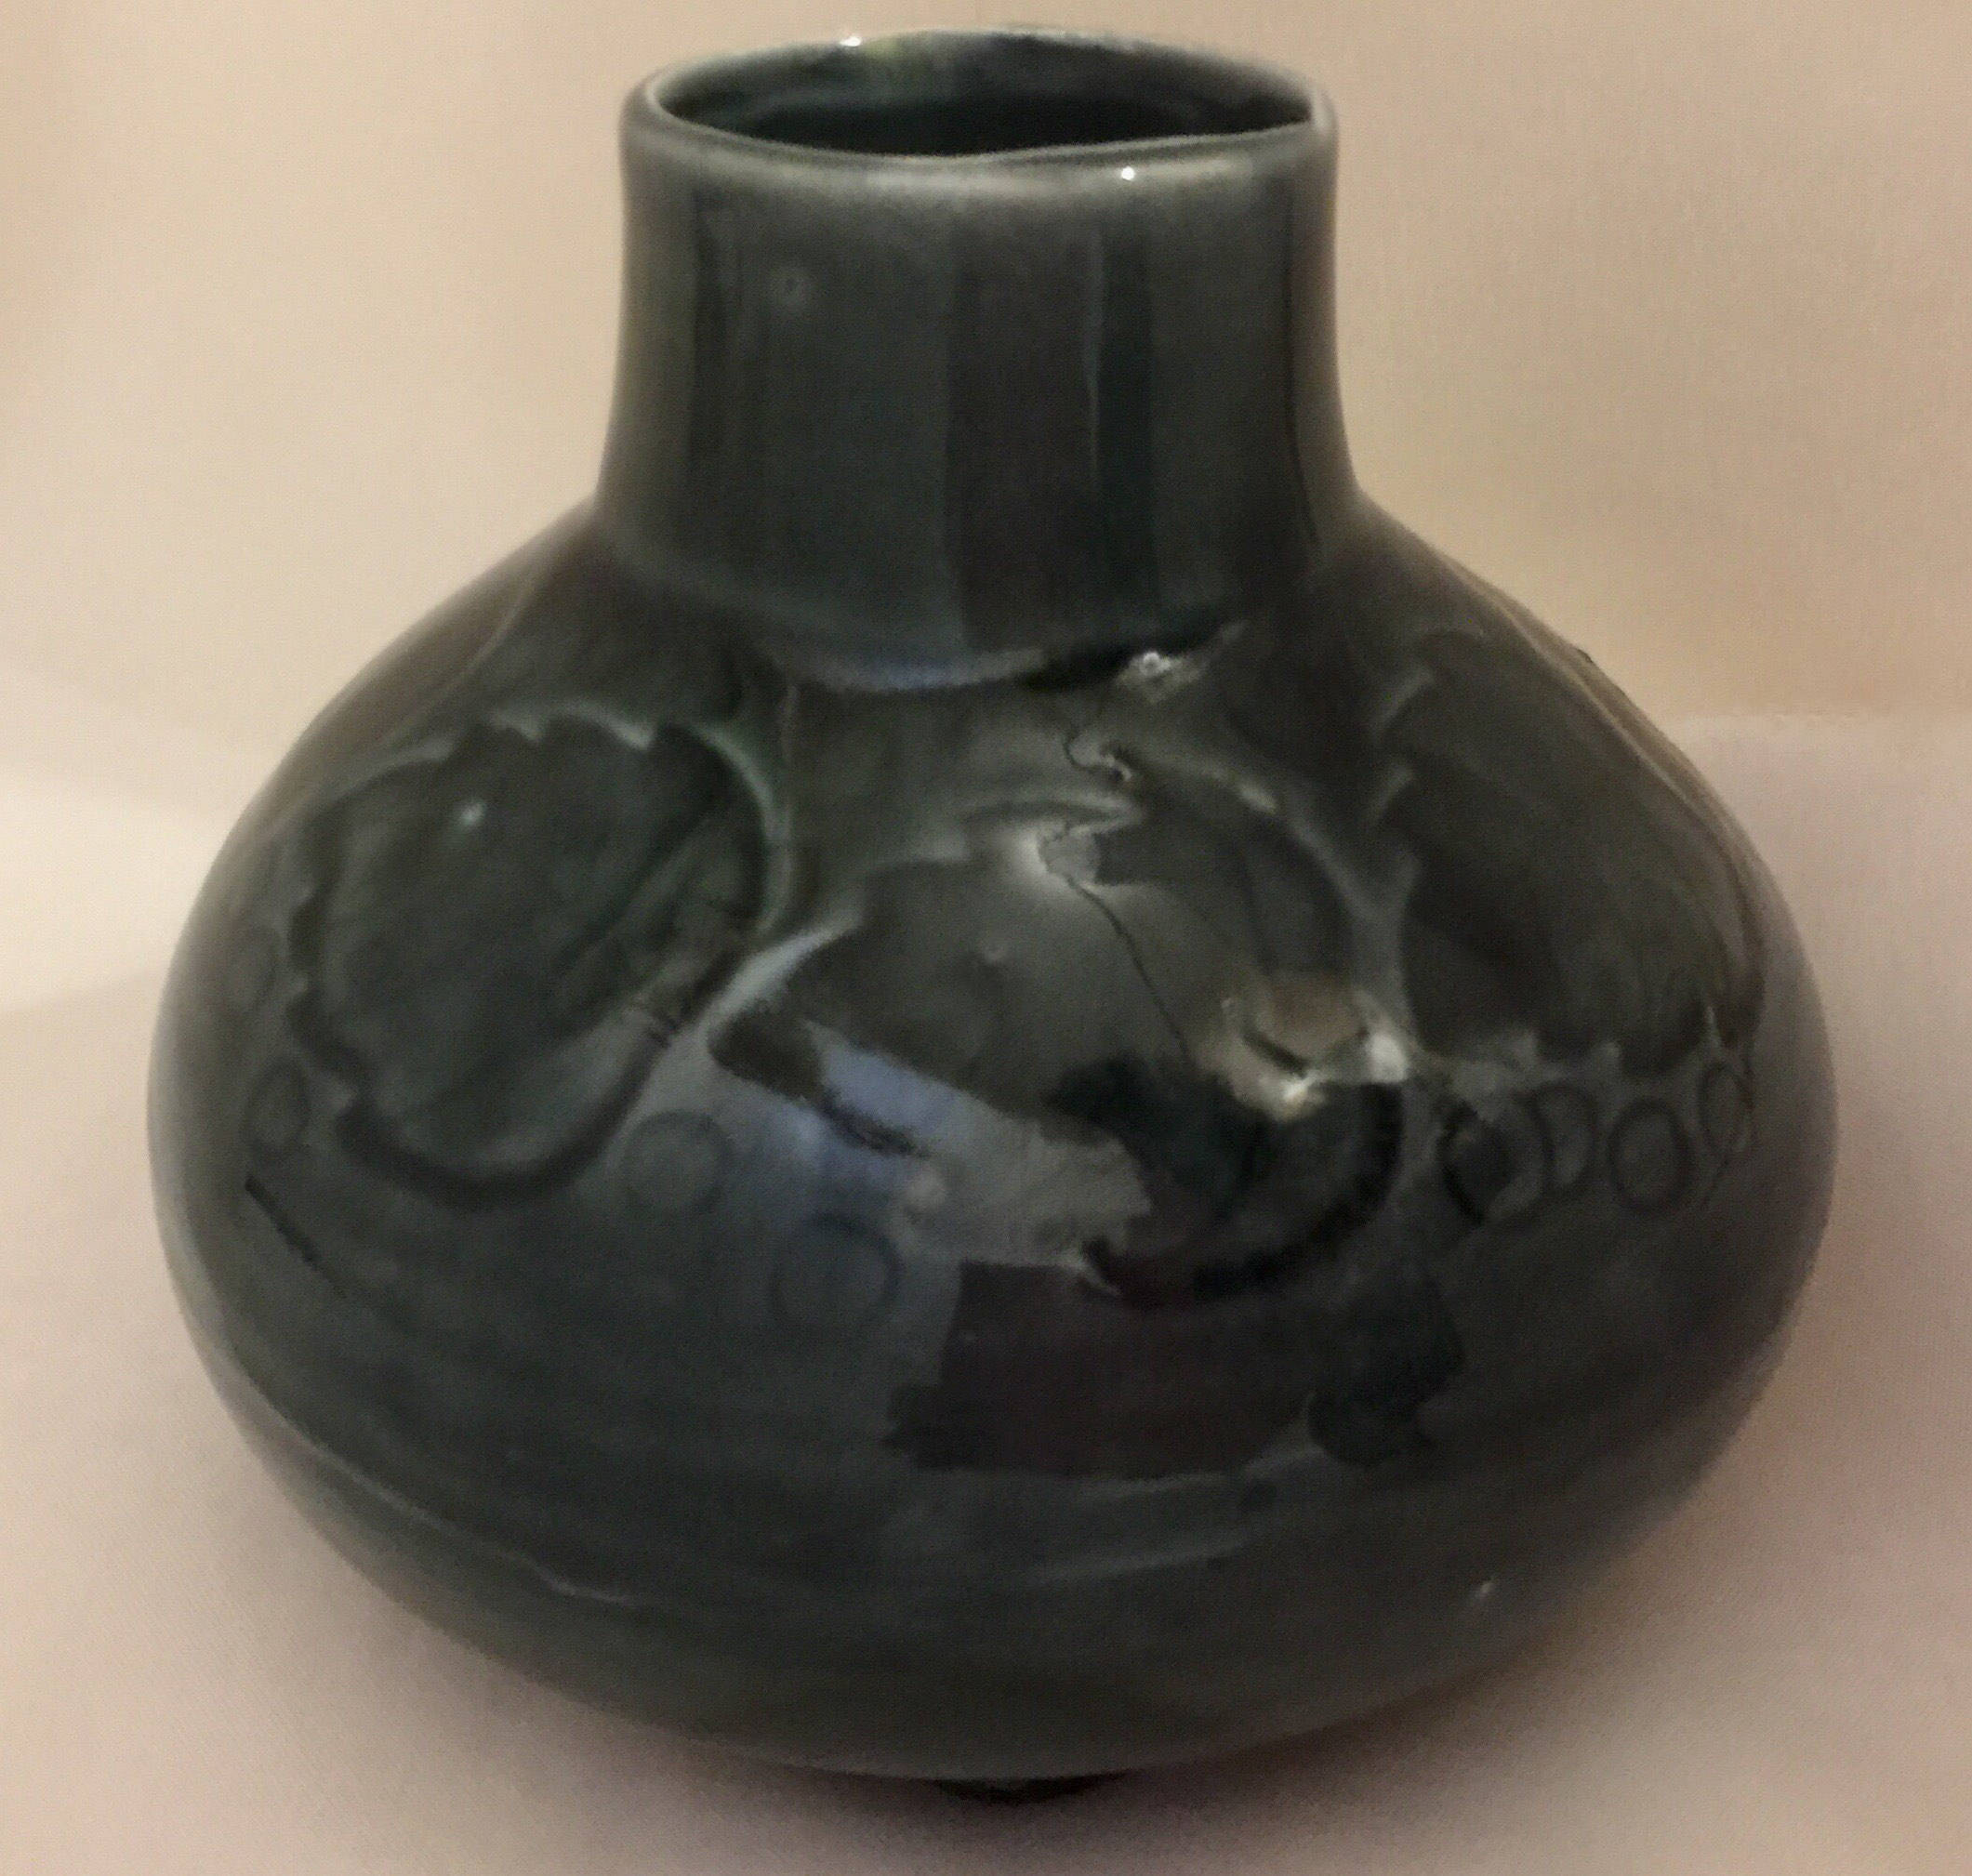 roseville ceramic vase of bermuda pottery green leaf bulb vase vintage pottery etsy intended for dzoom